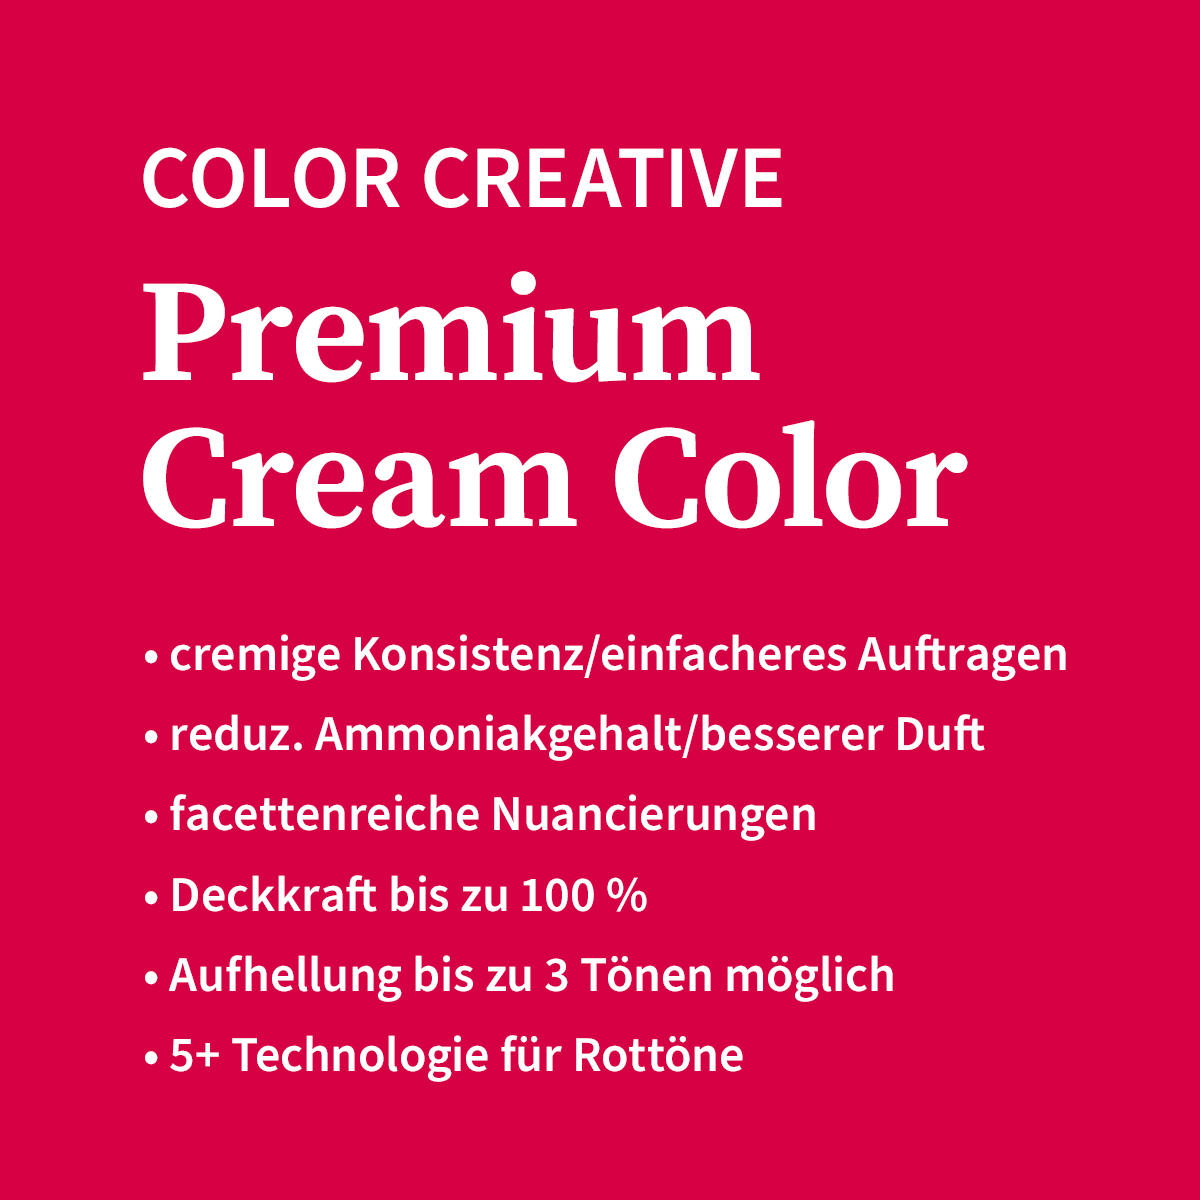 Basler Color Creative Premium Cream Color 12/0 rubio extra natural - rubio extra claro, tubo 60 ml - 4